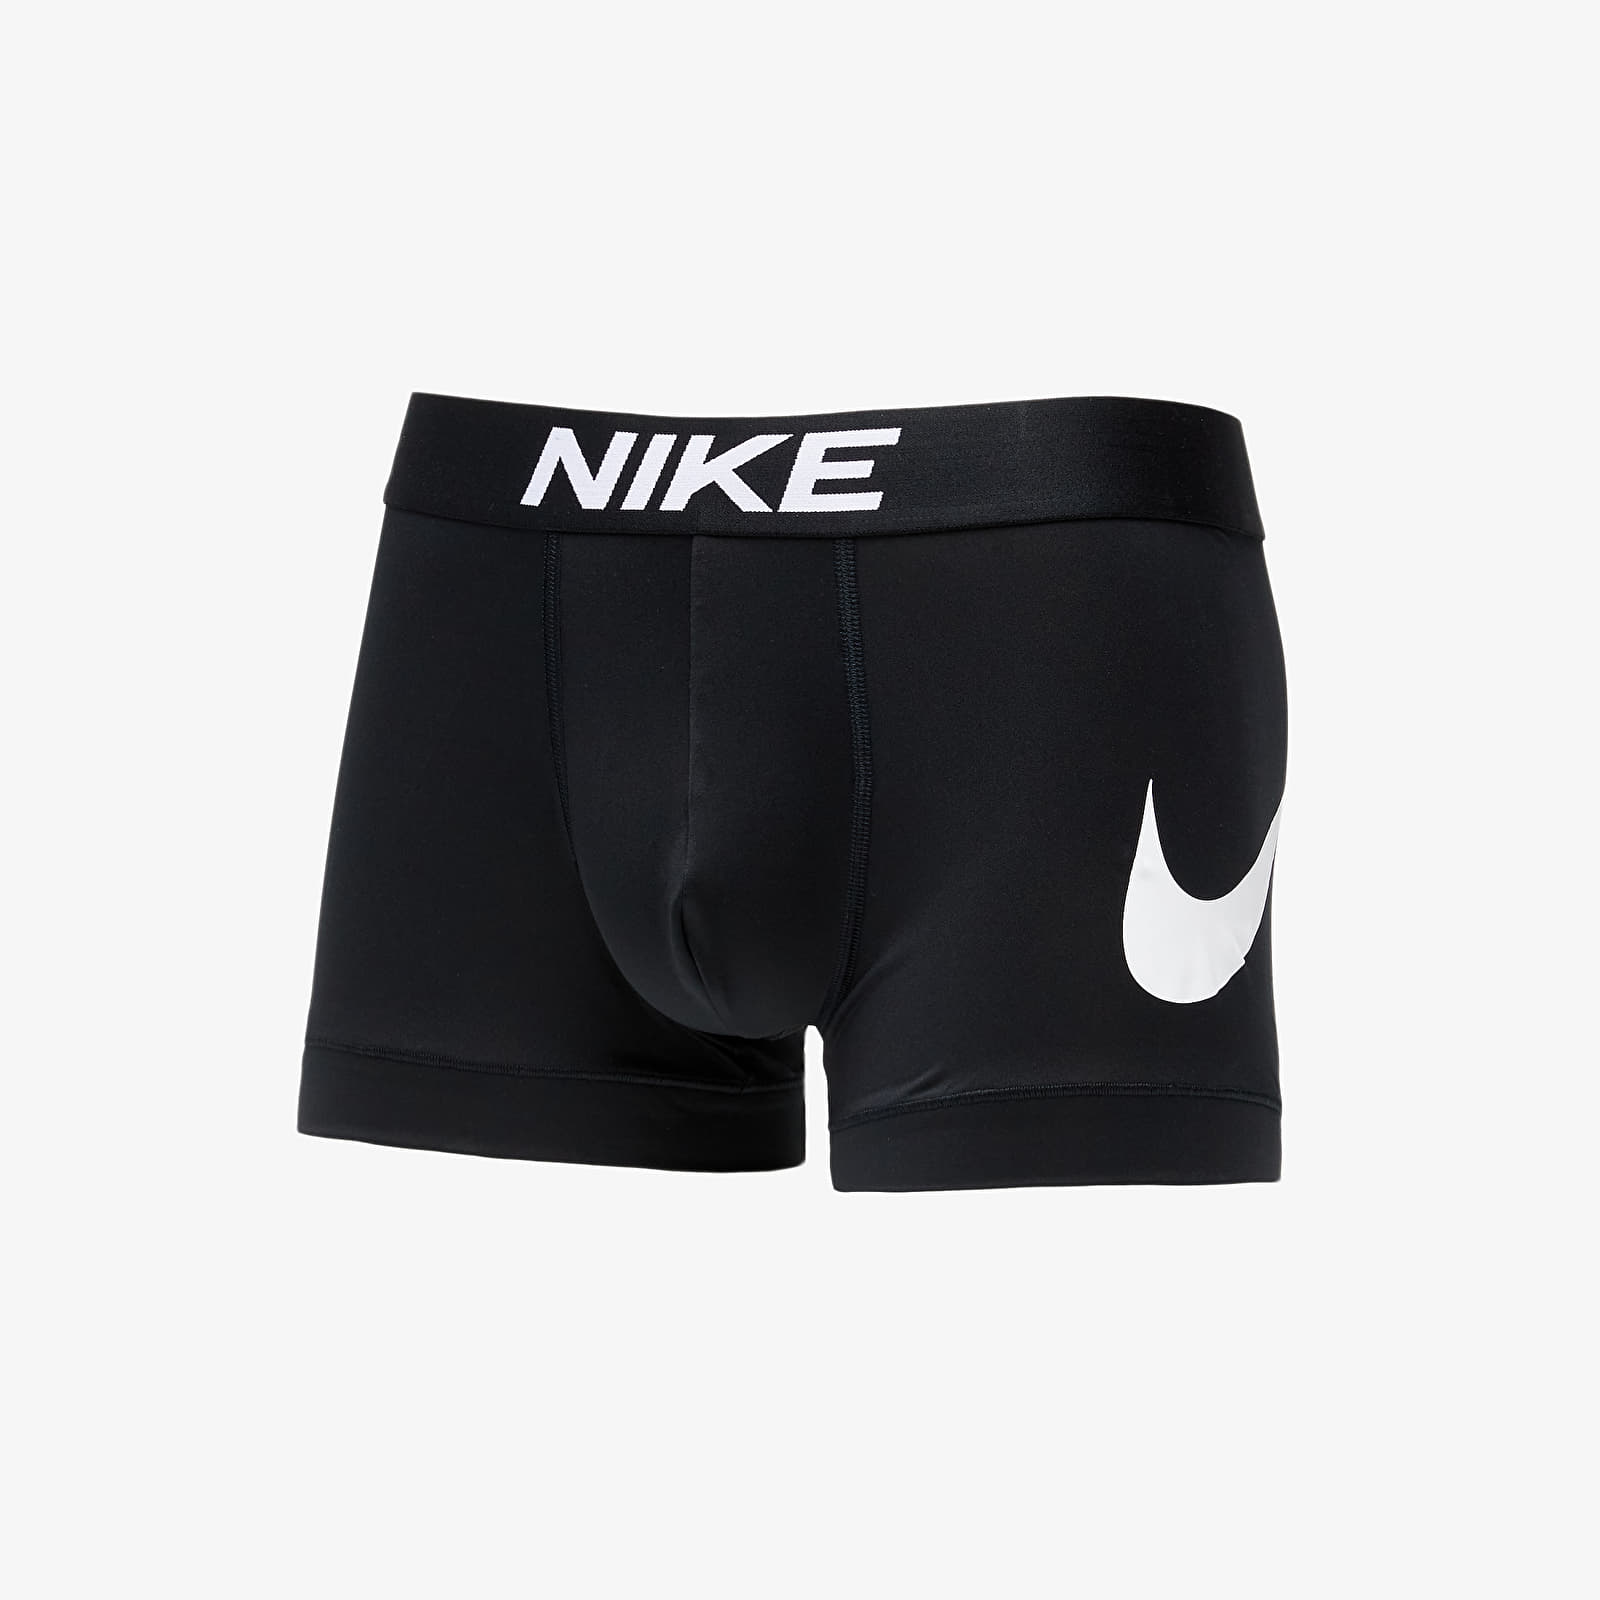 Calzoncillos de boxer Nike Essential Micro Trunk Shorty Black